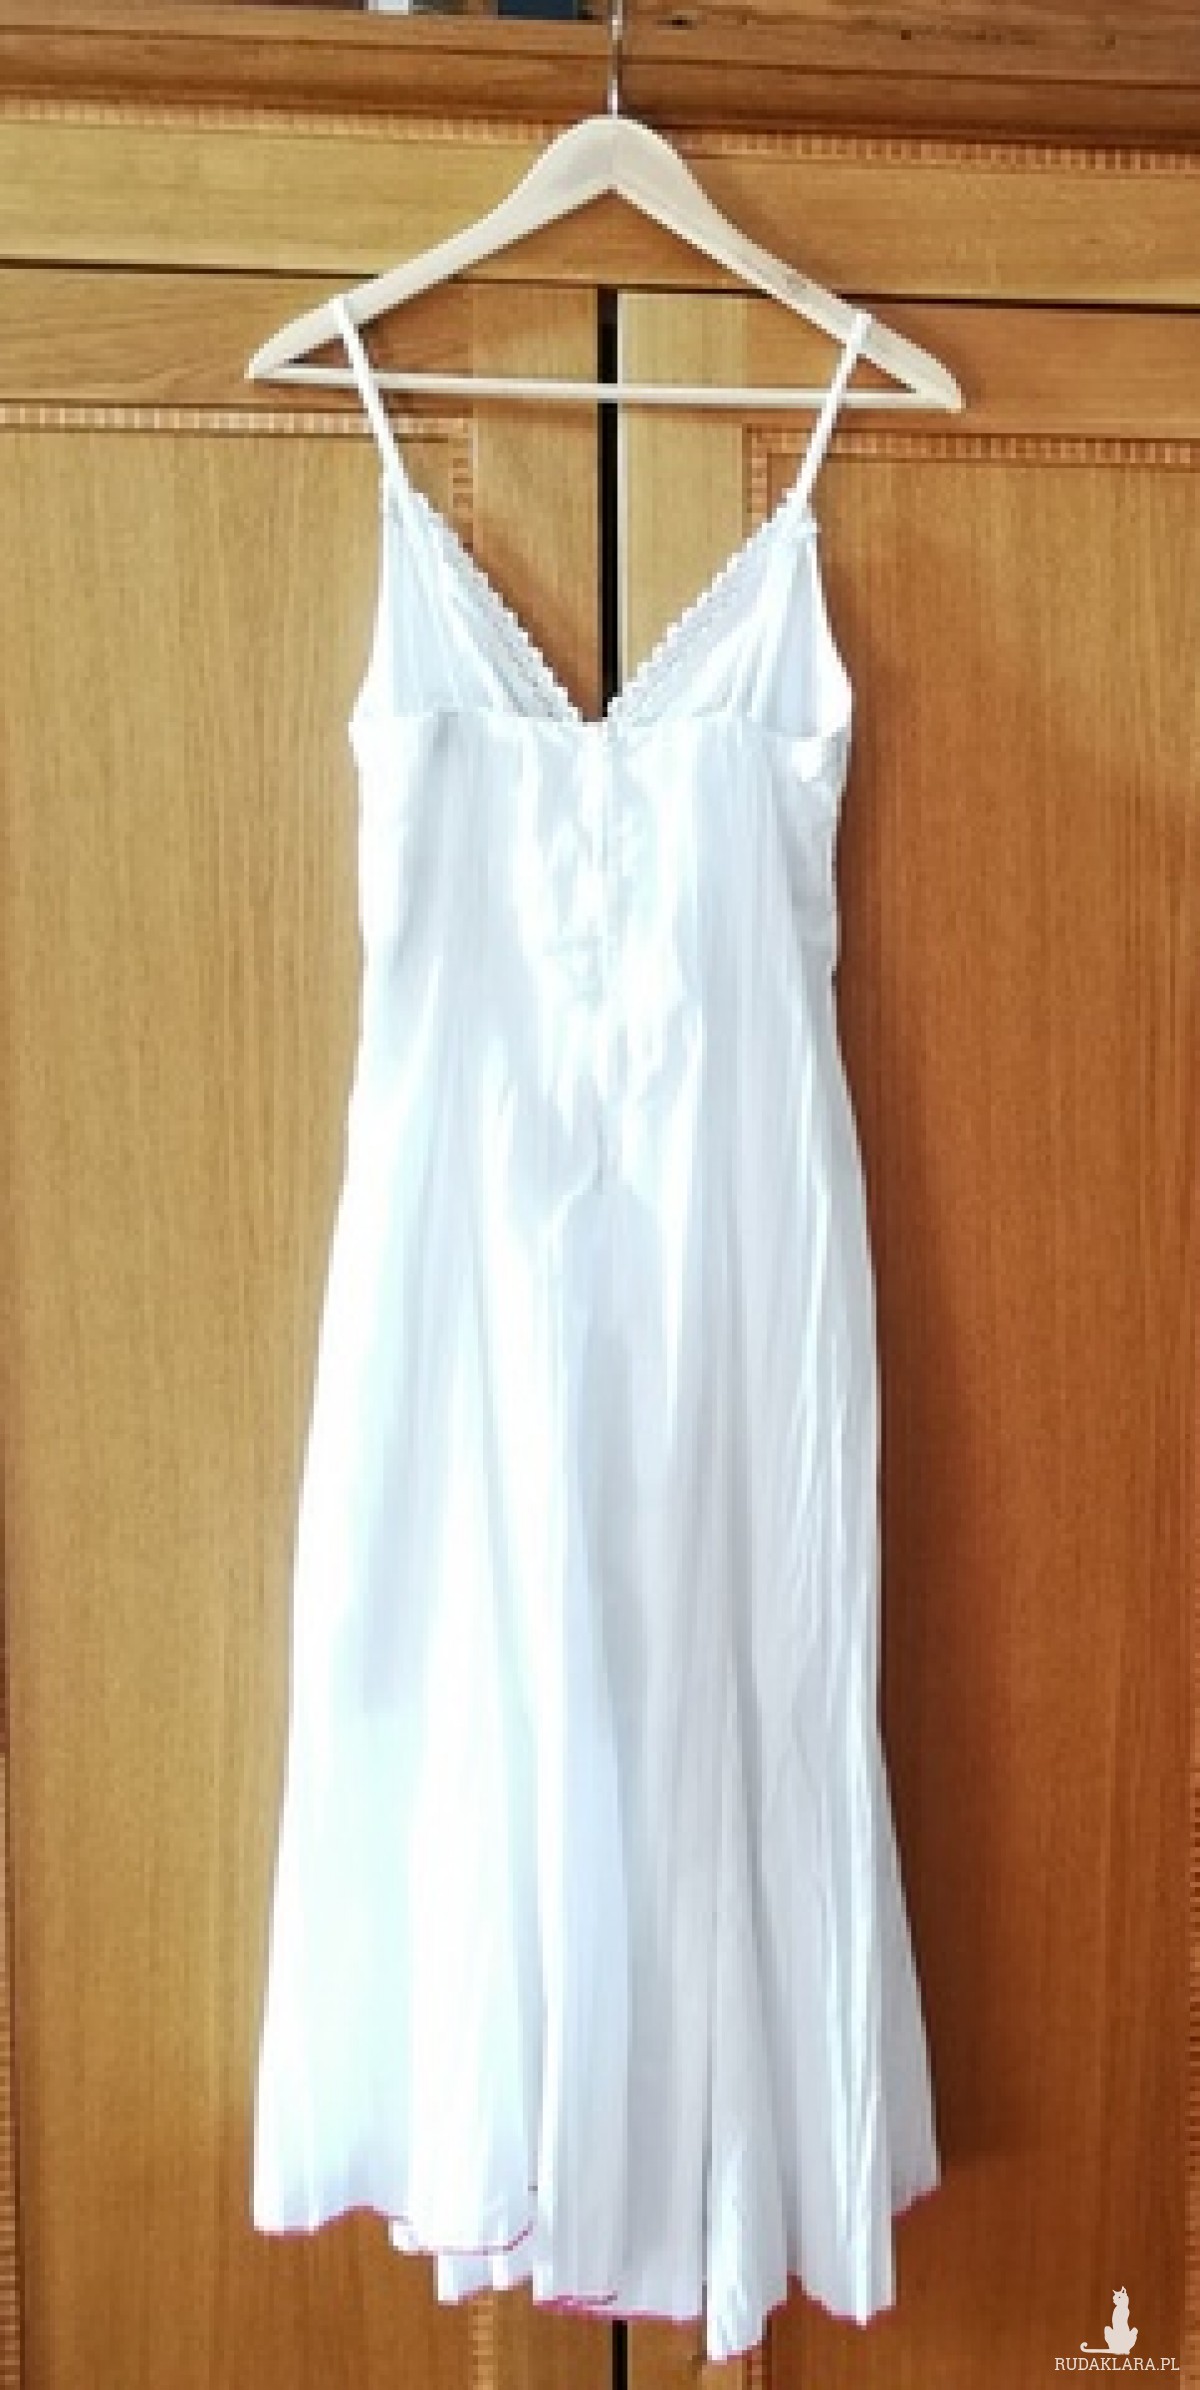 sukienka biała lato retro romantyczna